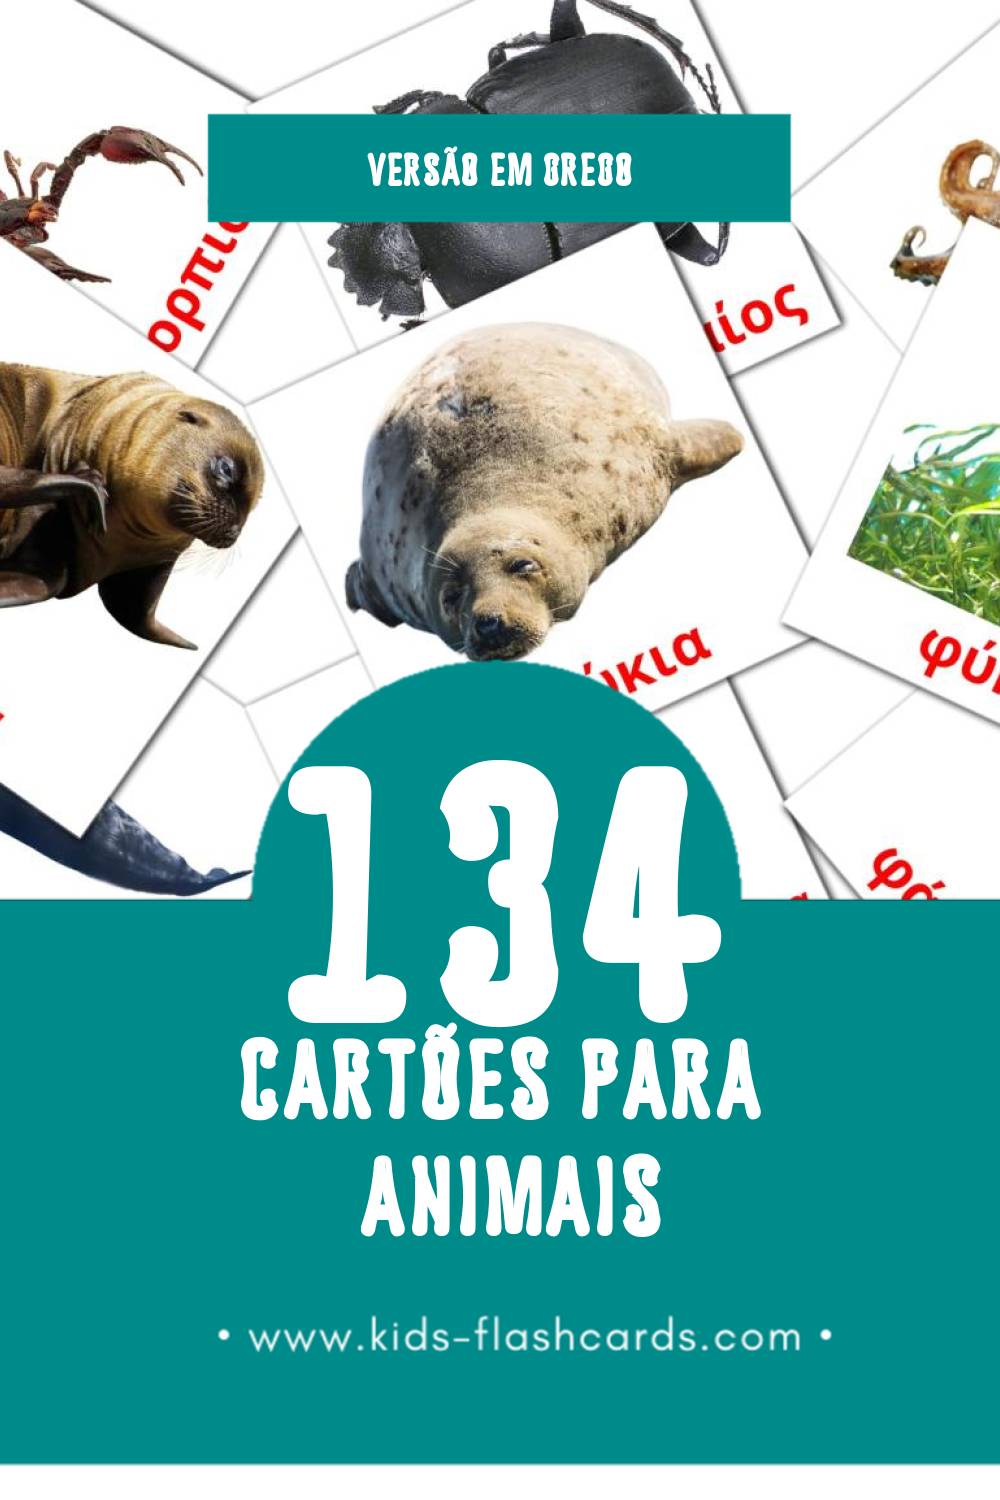 Flashcards de Των ζώων Visuais para Toddlers (134 cartões em Grego)